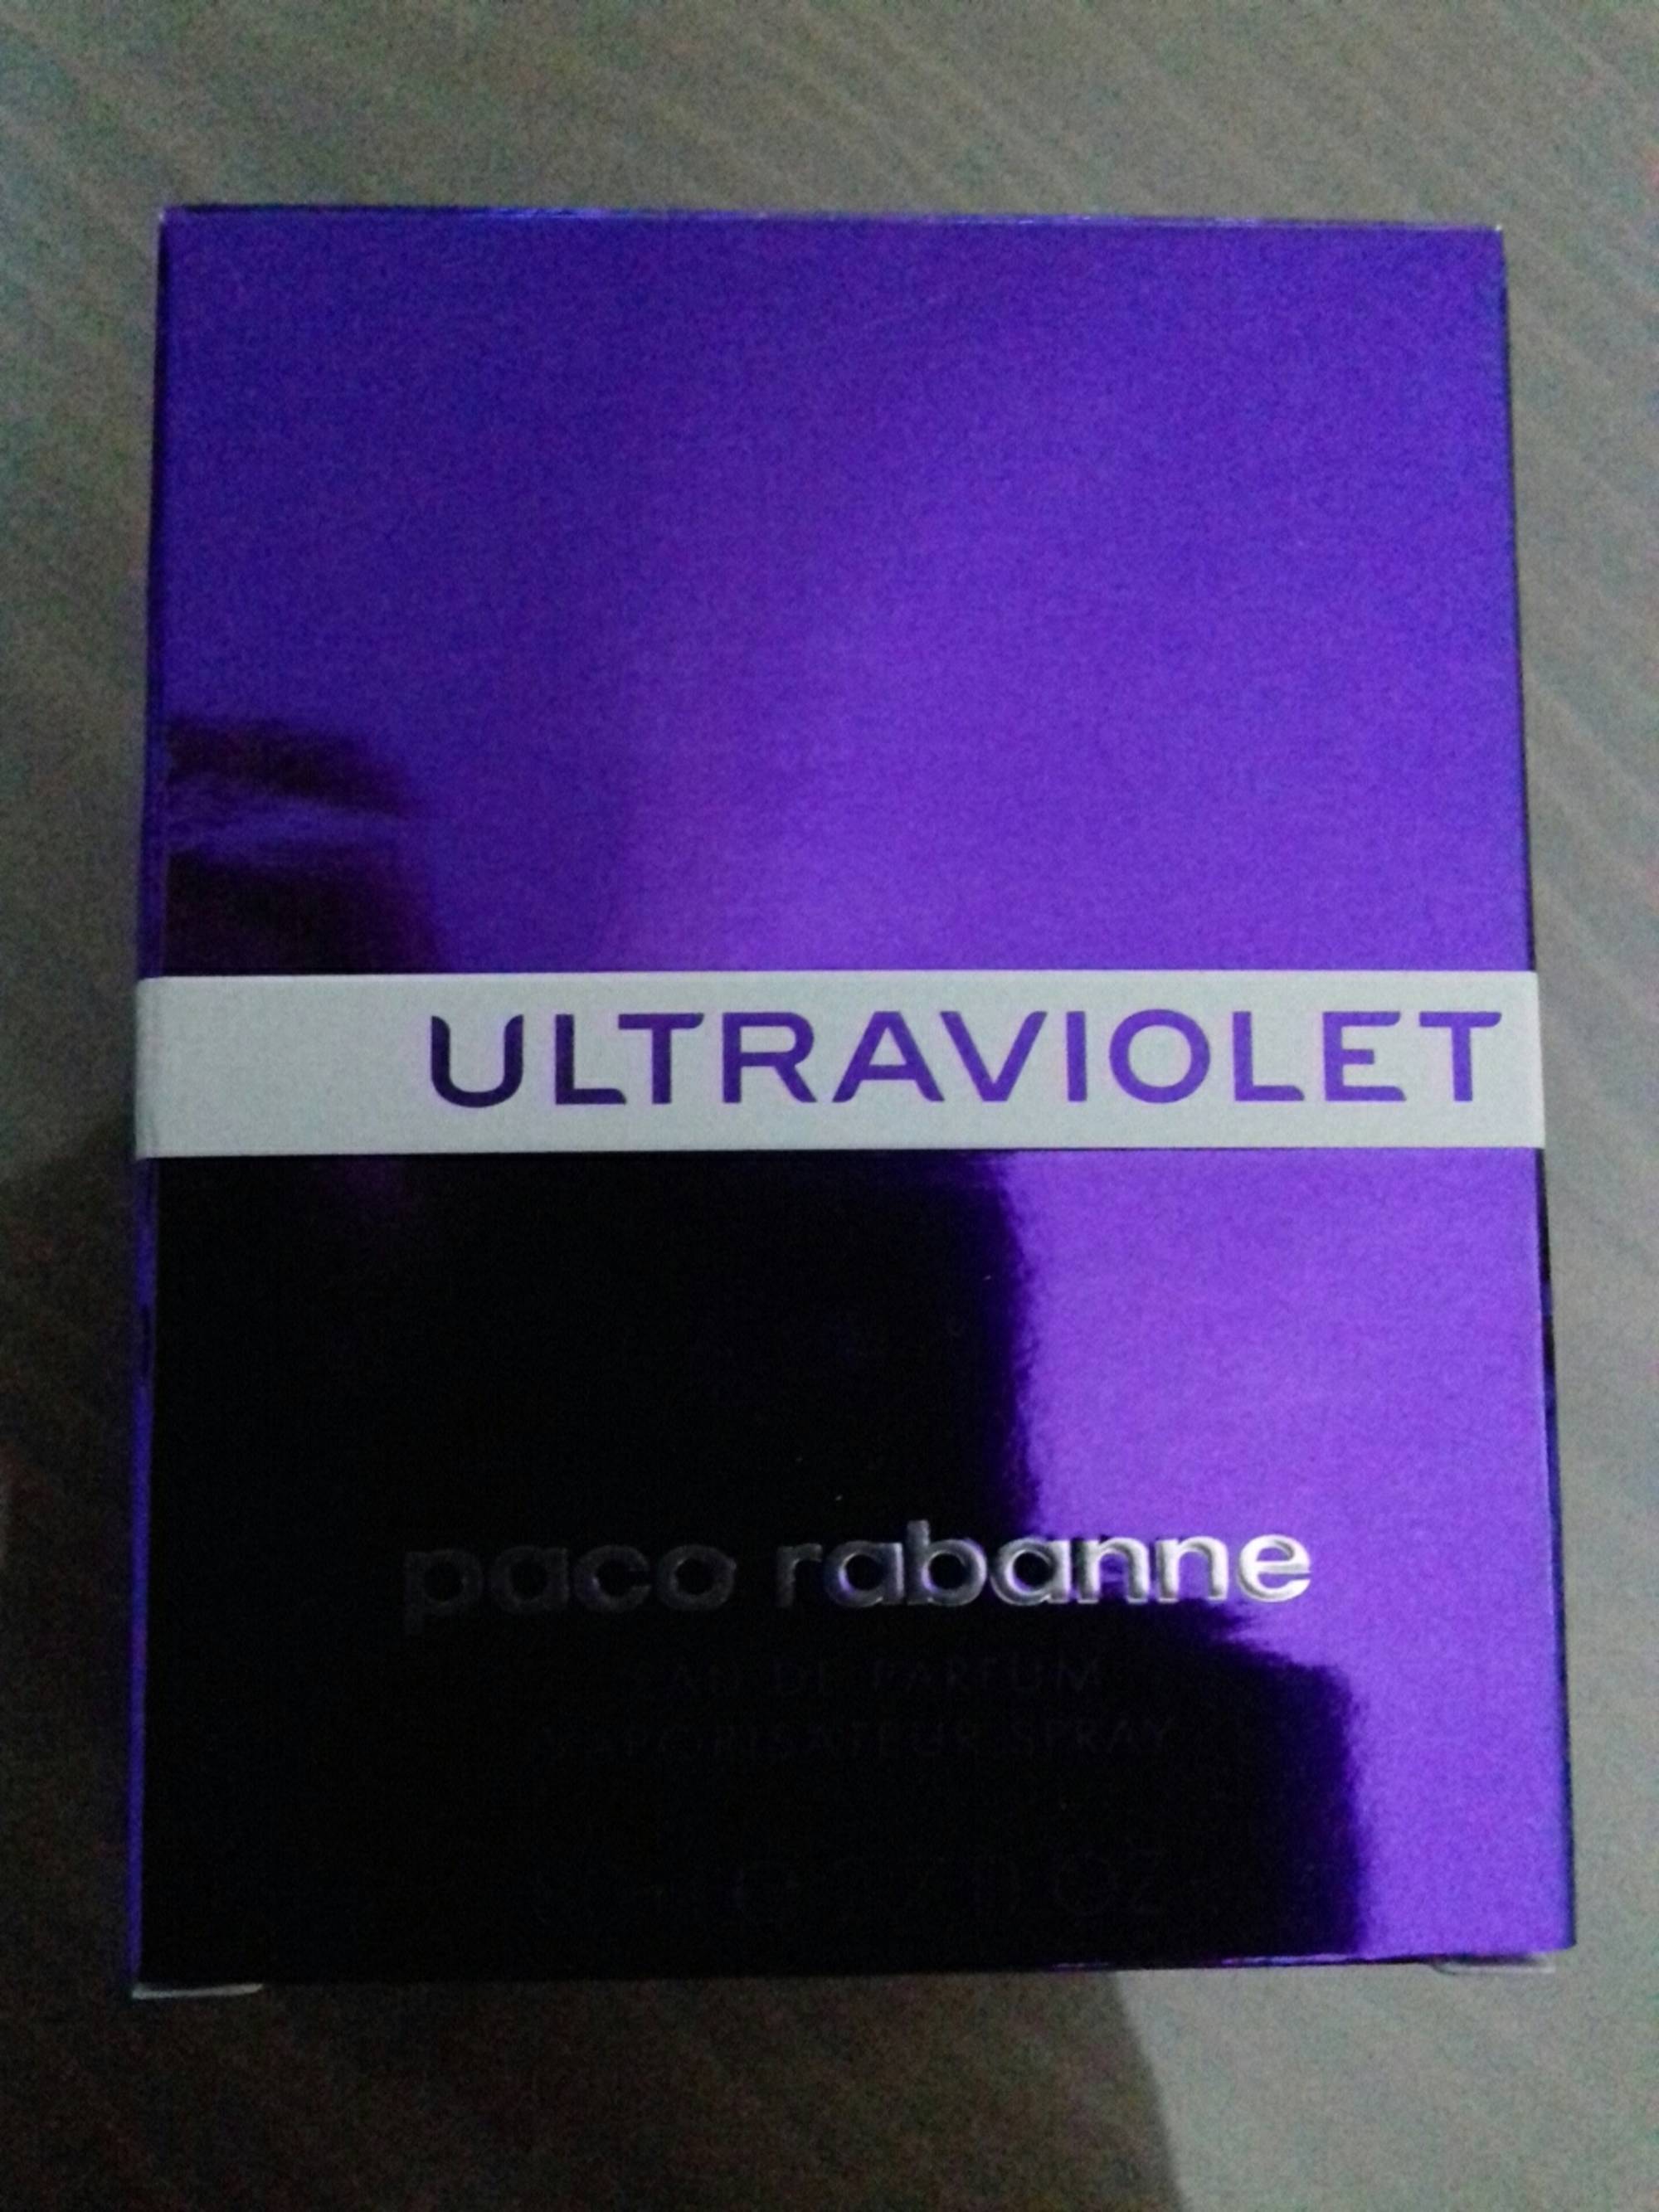 PACO RABANNE - Ultraviolet - Eau de parfum 